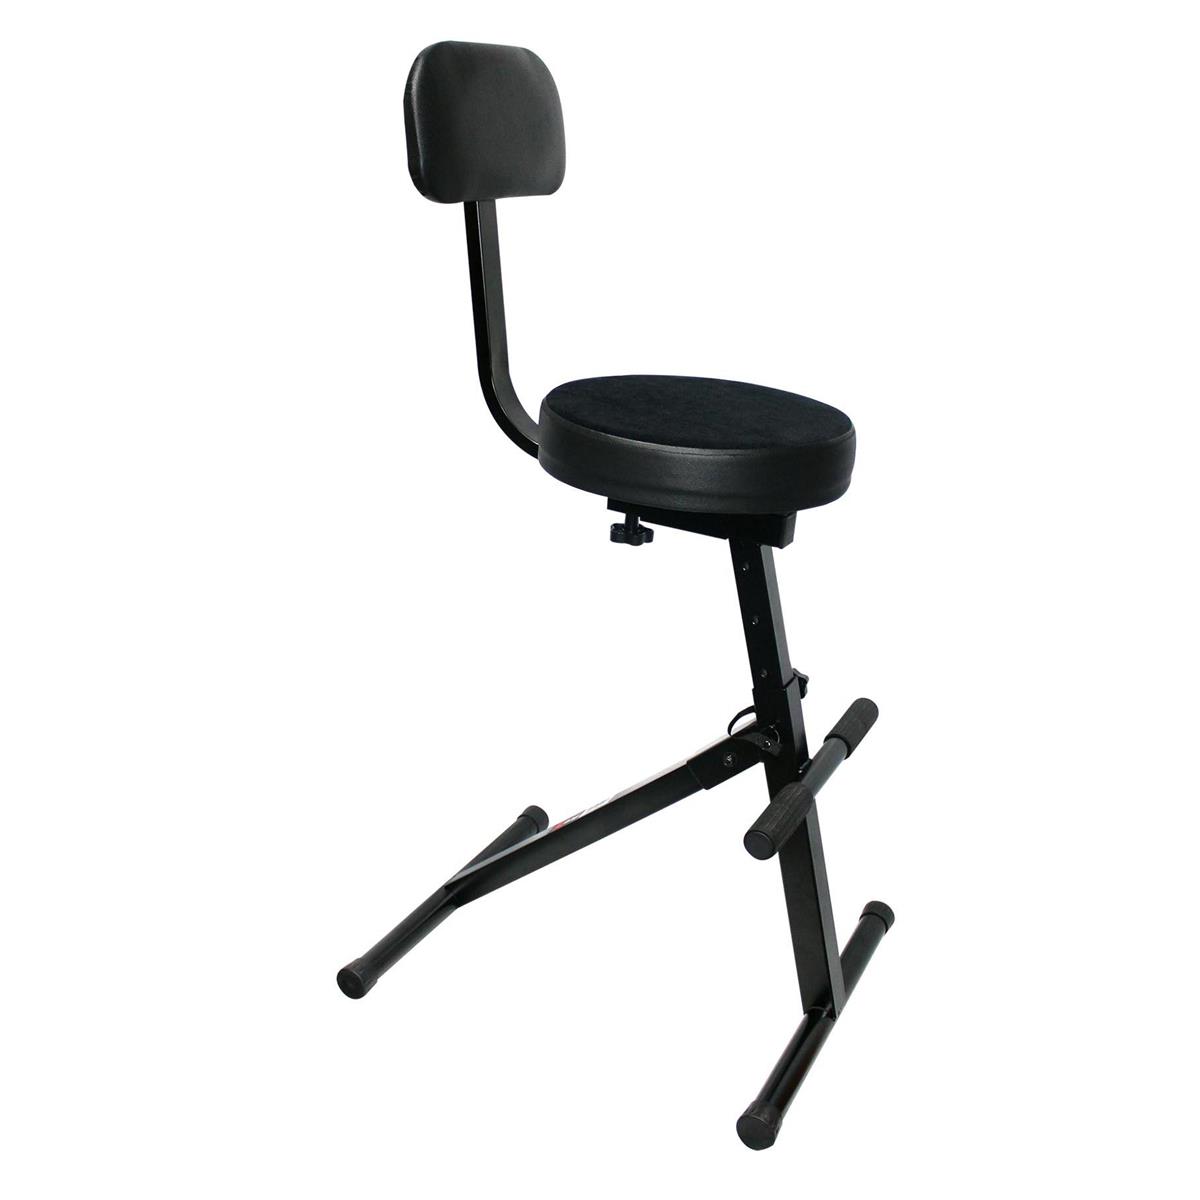 Image of ProX X-GIG CHAIR Portable Adjustable Gig Chair